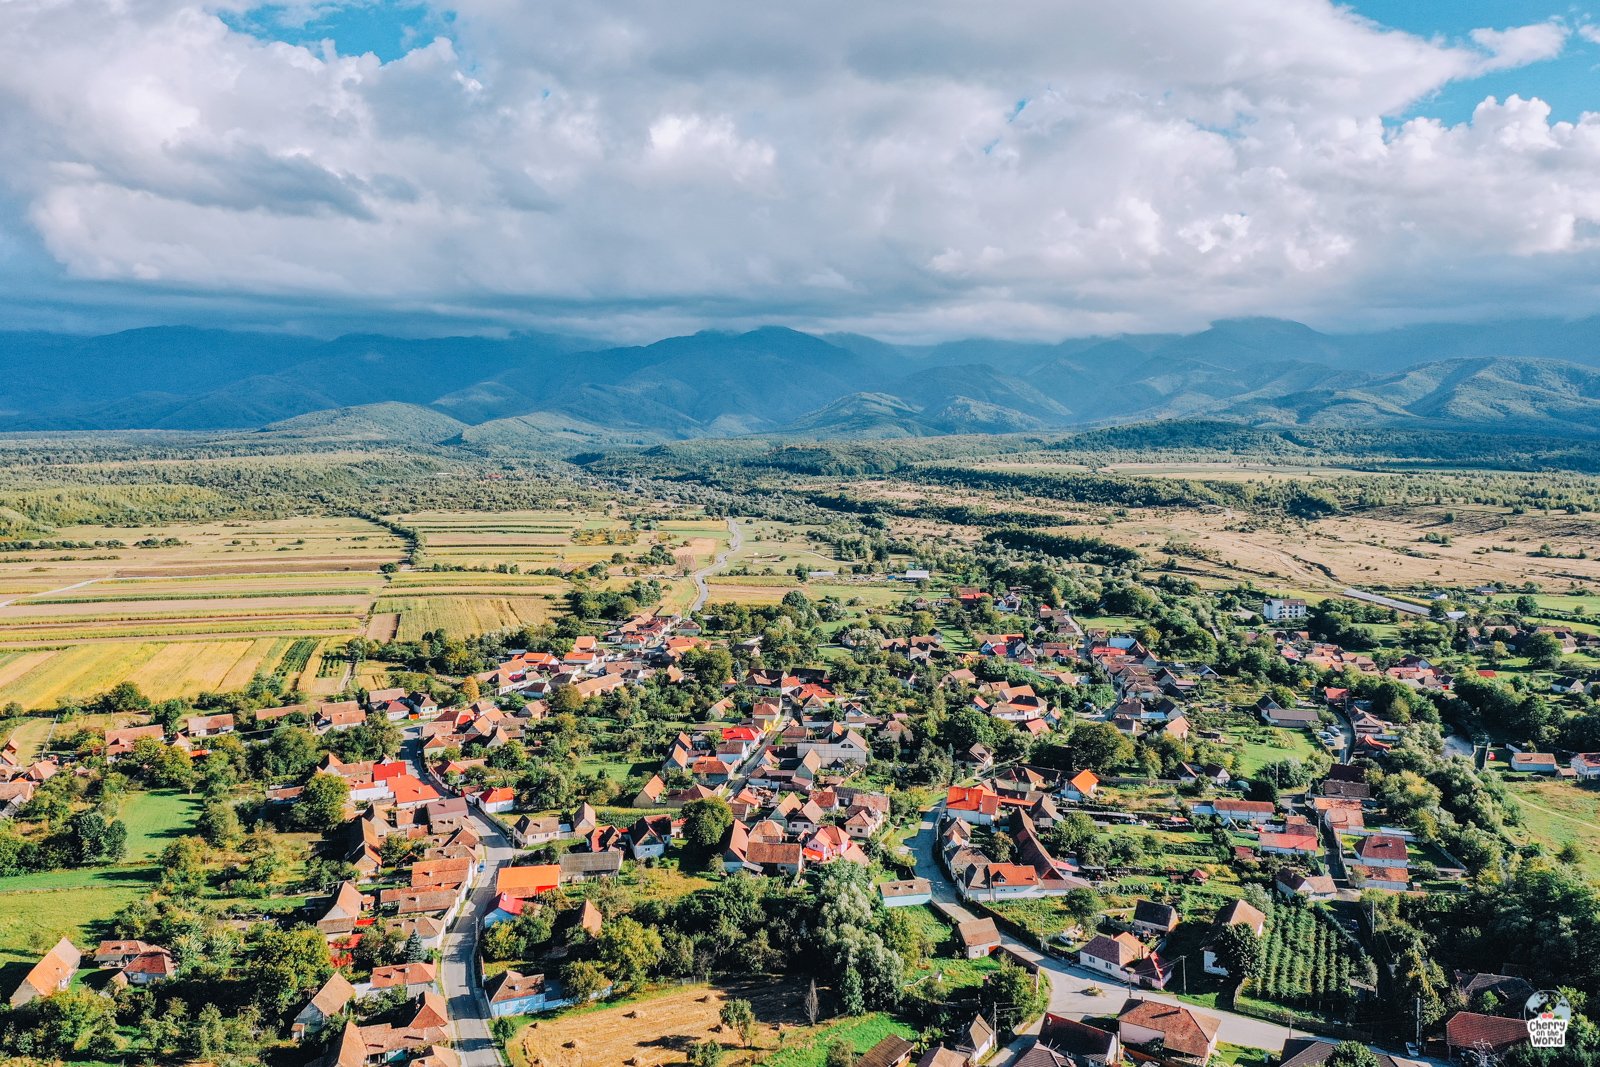 Porumbacu de Sus este o localitate de basm, aflată la poalele munților, în care timpul parcă a stat în loc